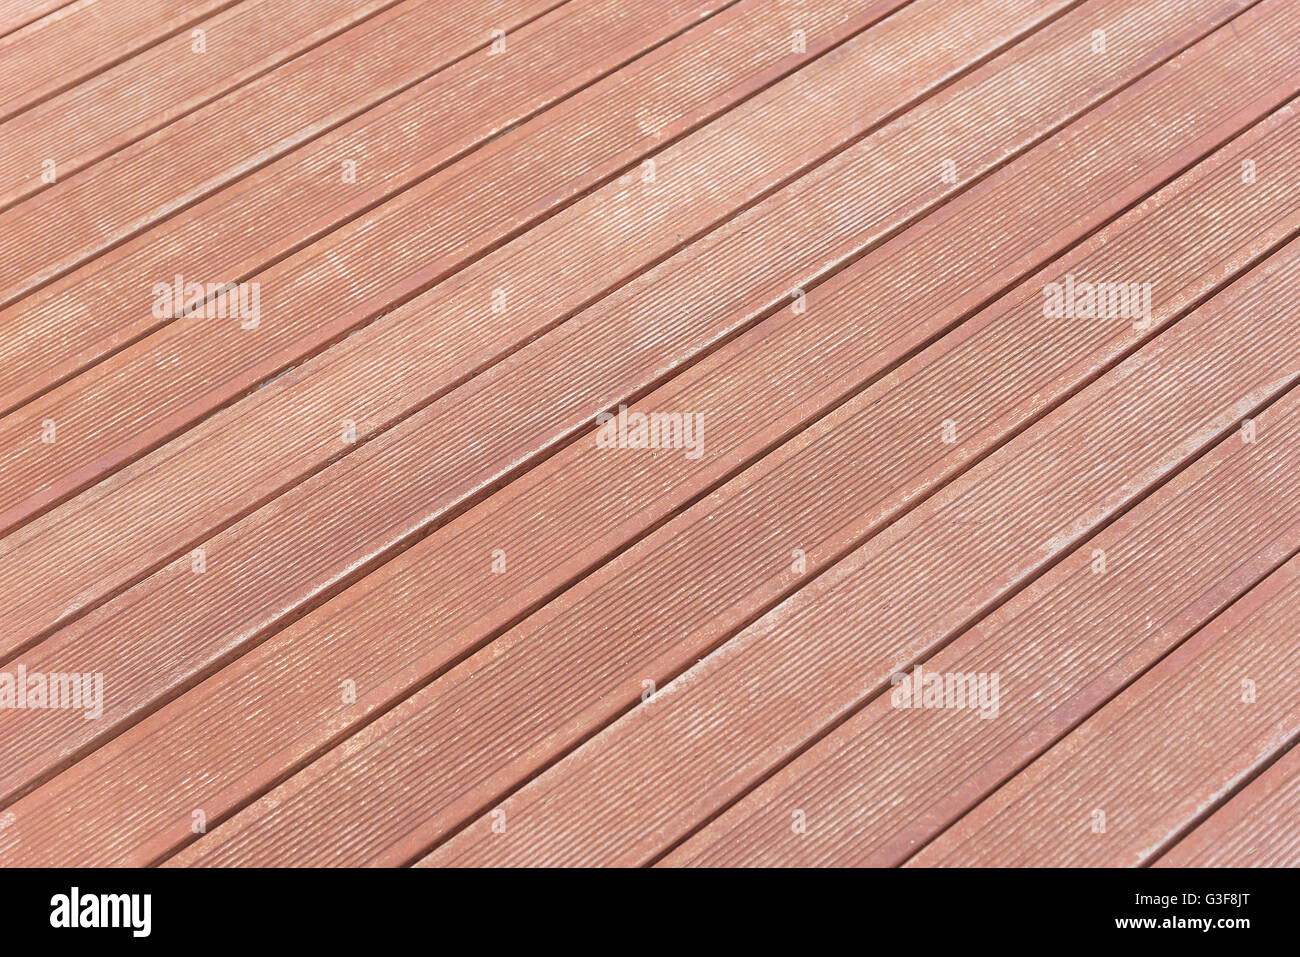 Wooden floor background. Texture of wood boat floor. Stock Photo